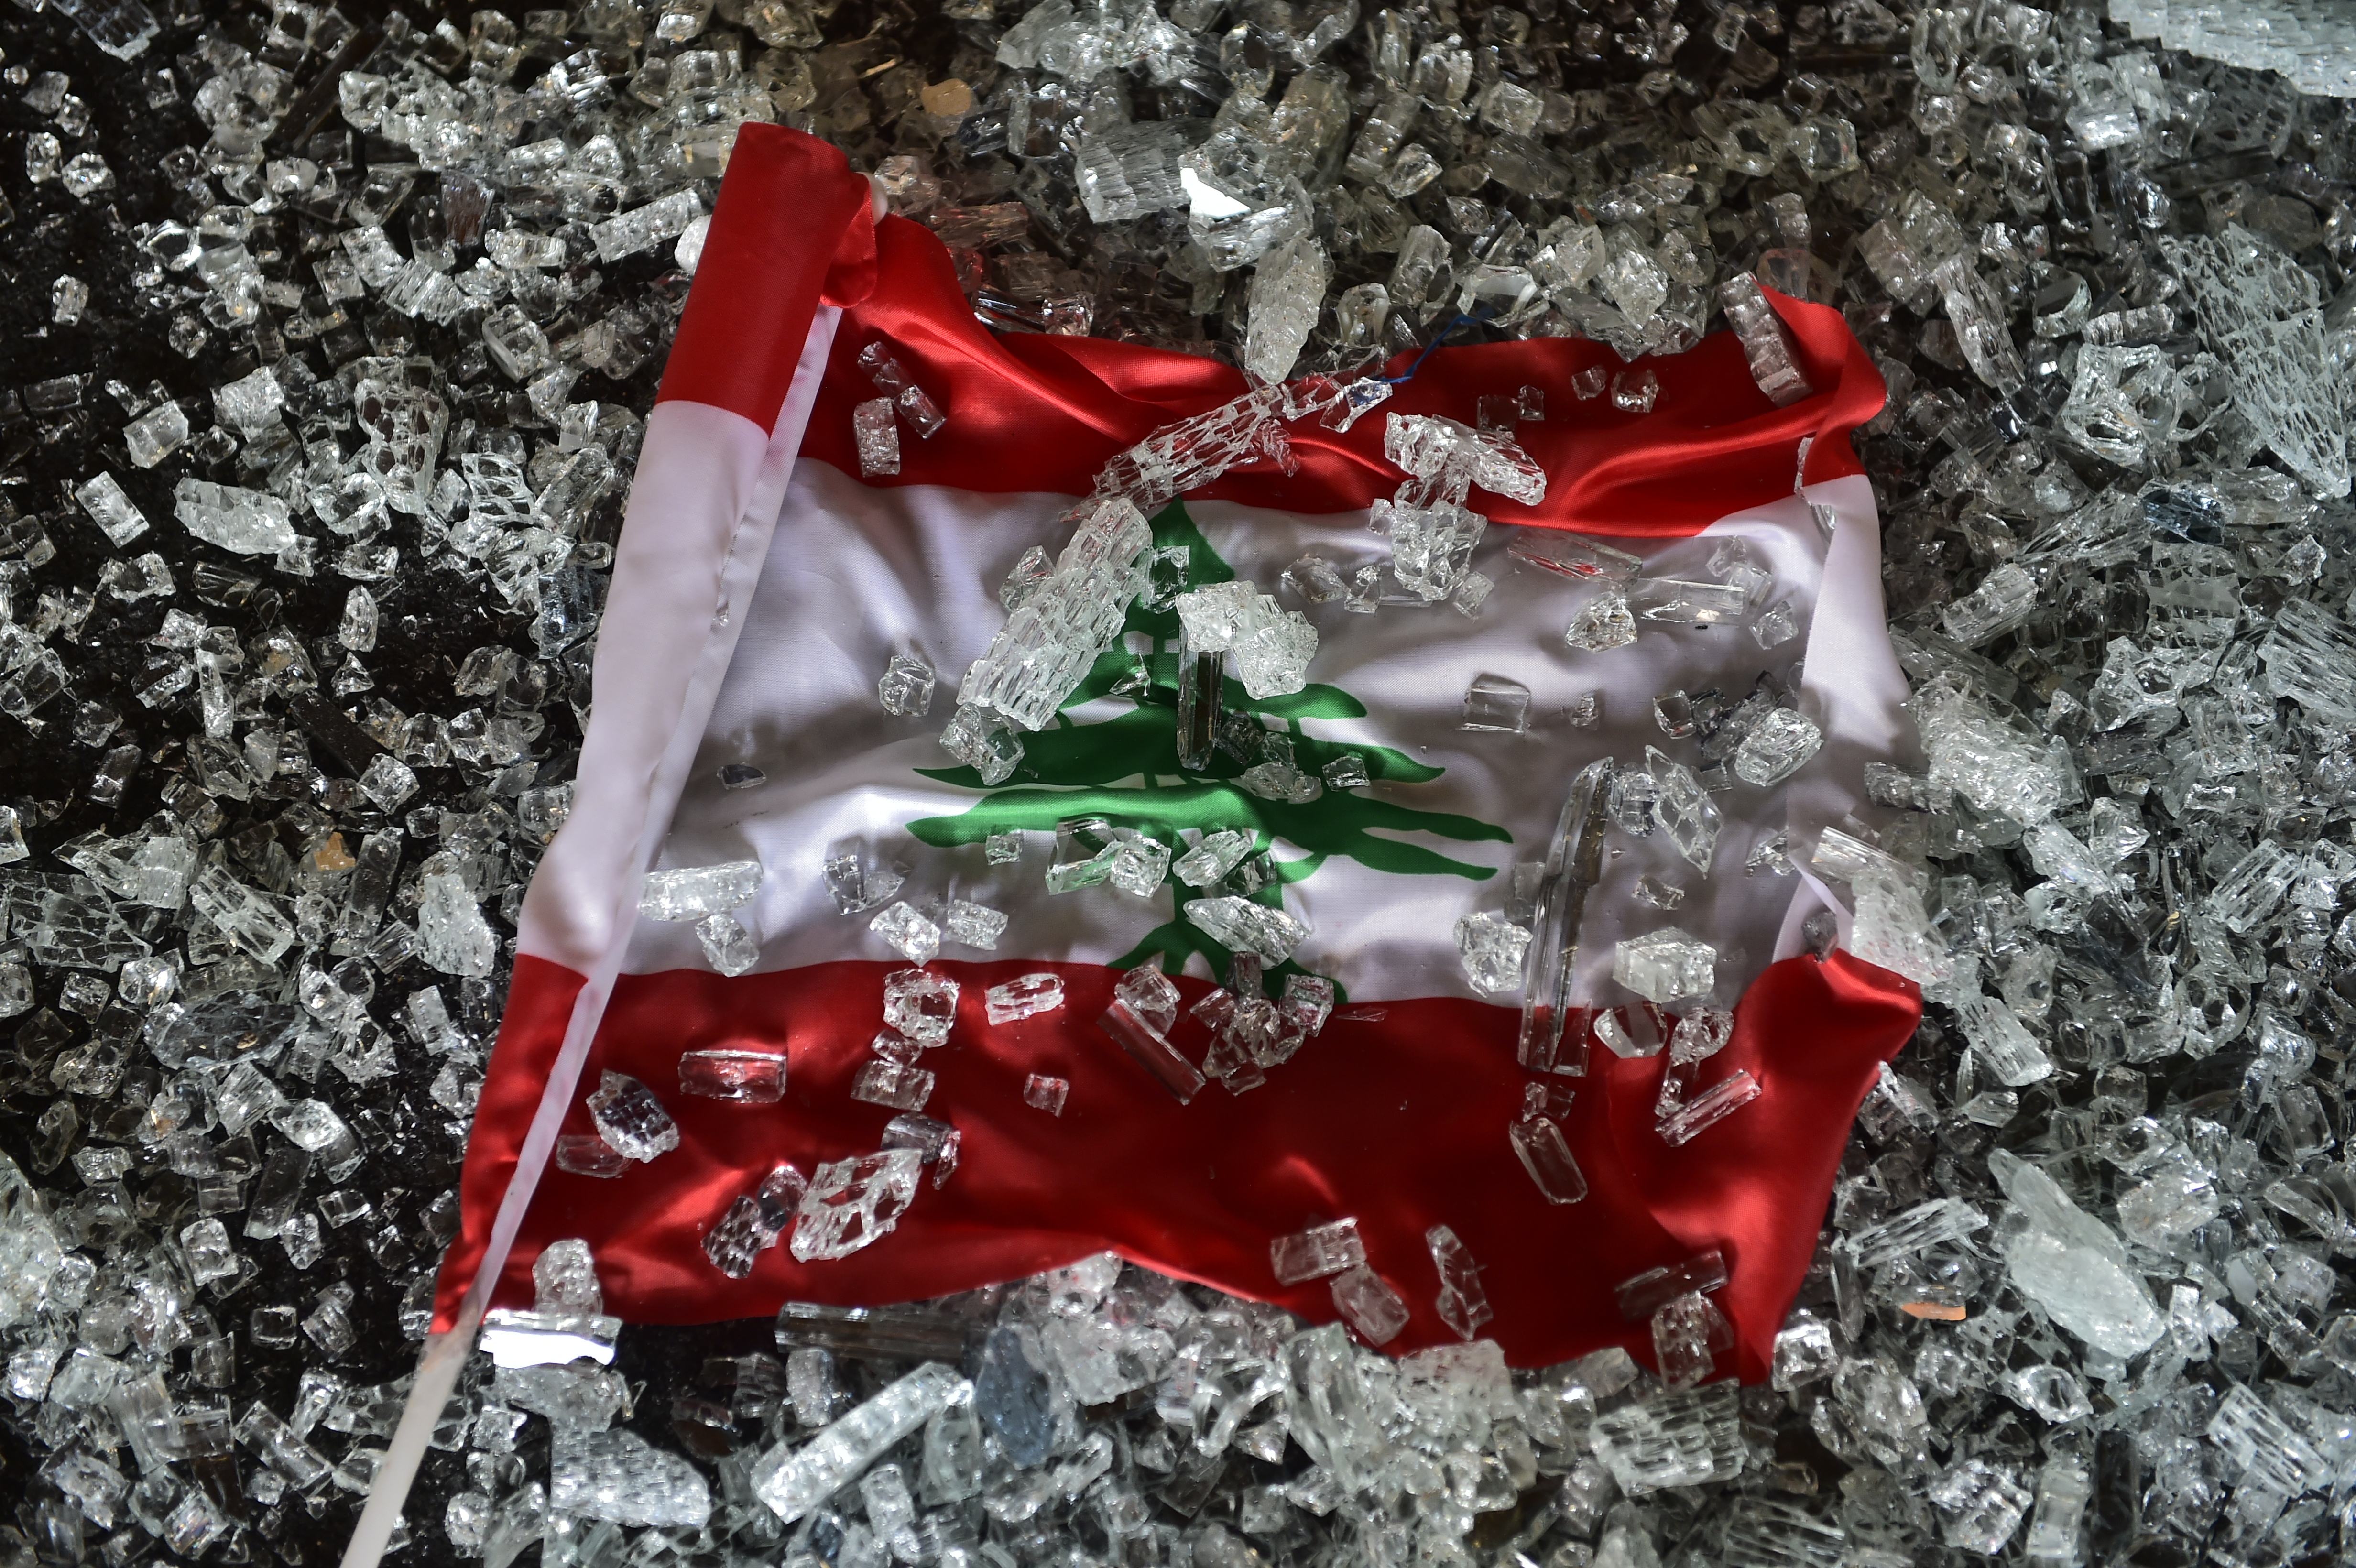 Most csak egy raktár robbant fel Libanonban, de hamarosan maga az ország is széteshet